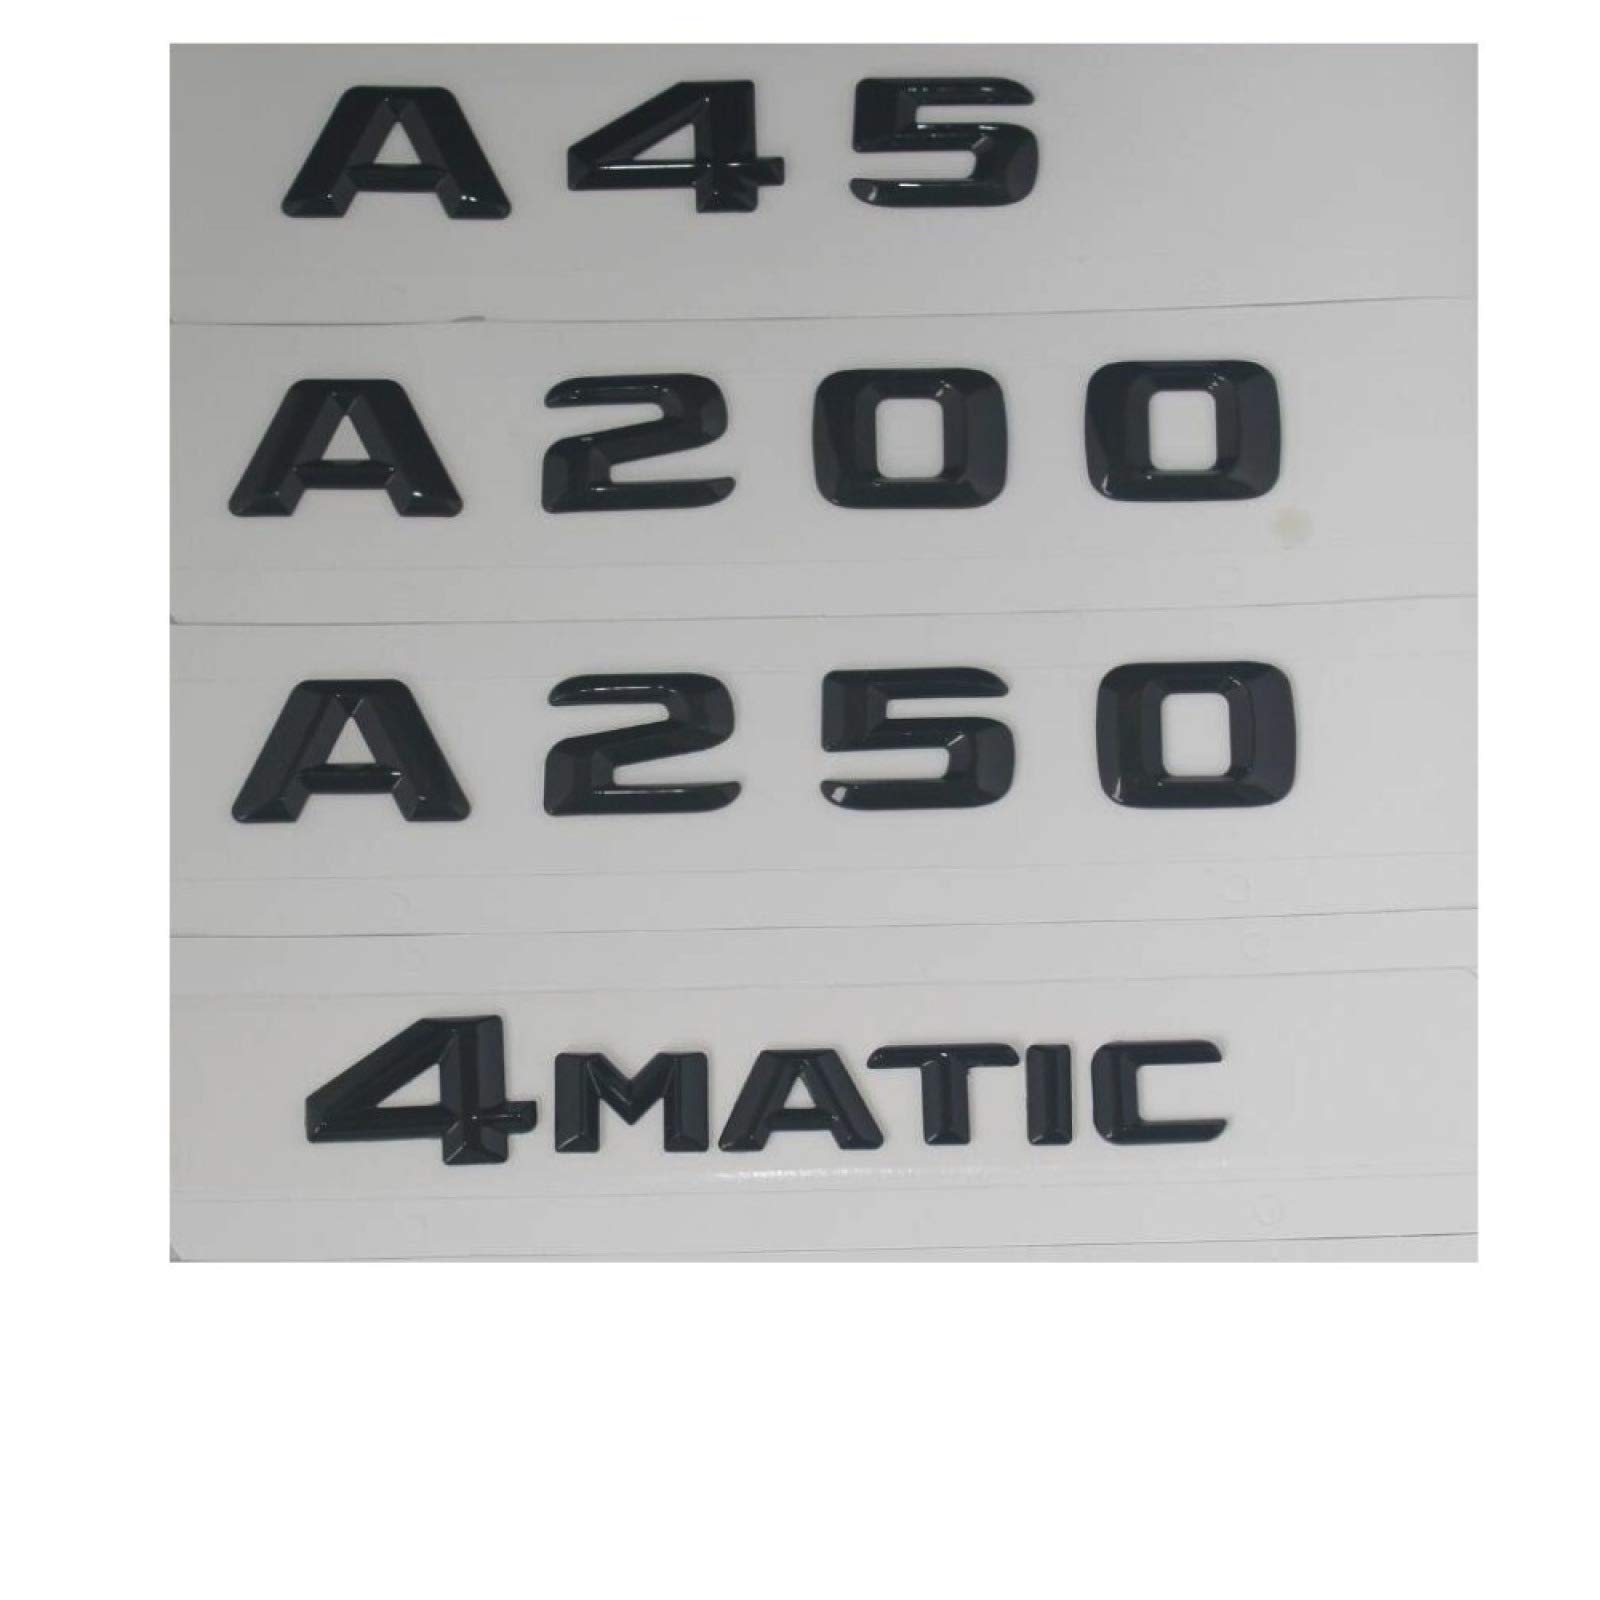 Schwarz glänzend Stamm Buchstaben Anzahl Abzeichen Emblem Embleme,für Mercedes Benz A45 AMG A200 A250 A220 4 Matic von YSLR